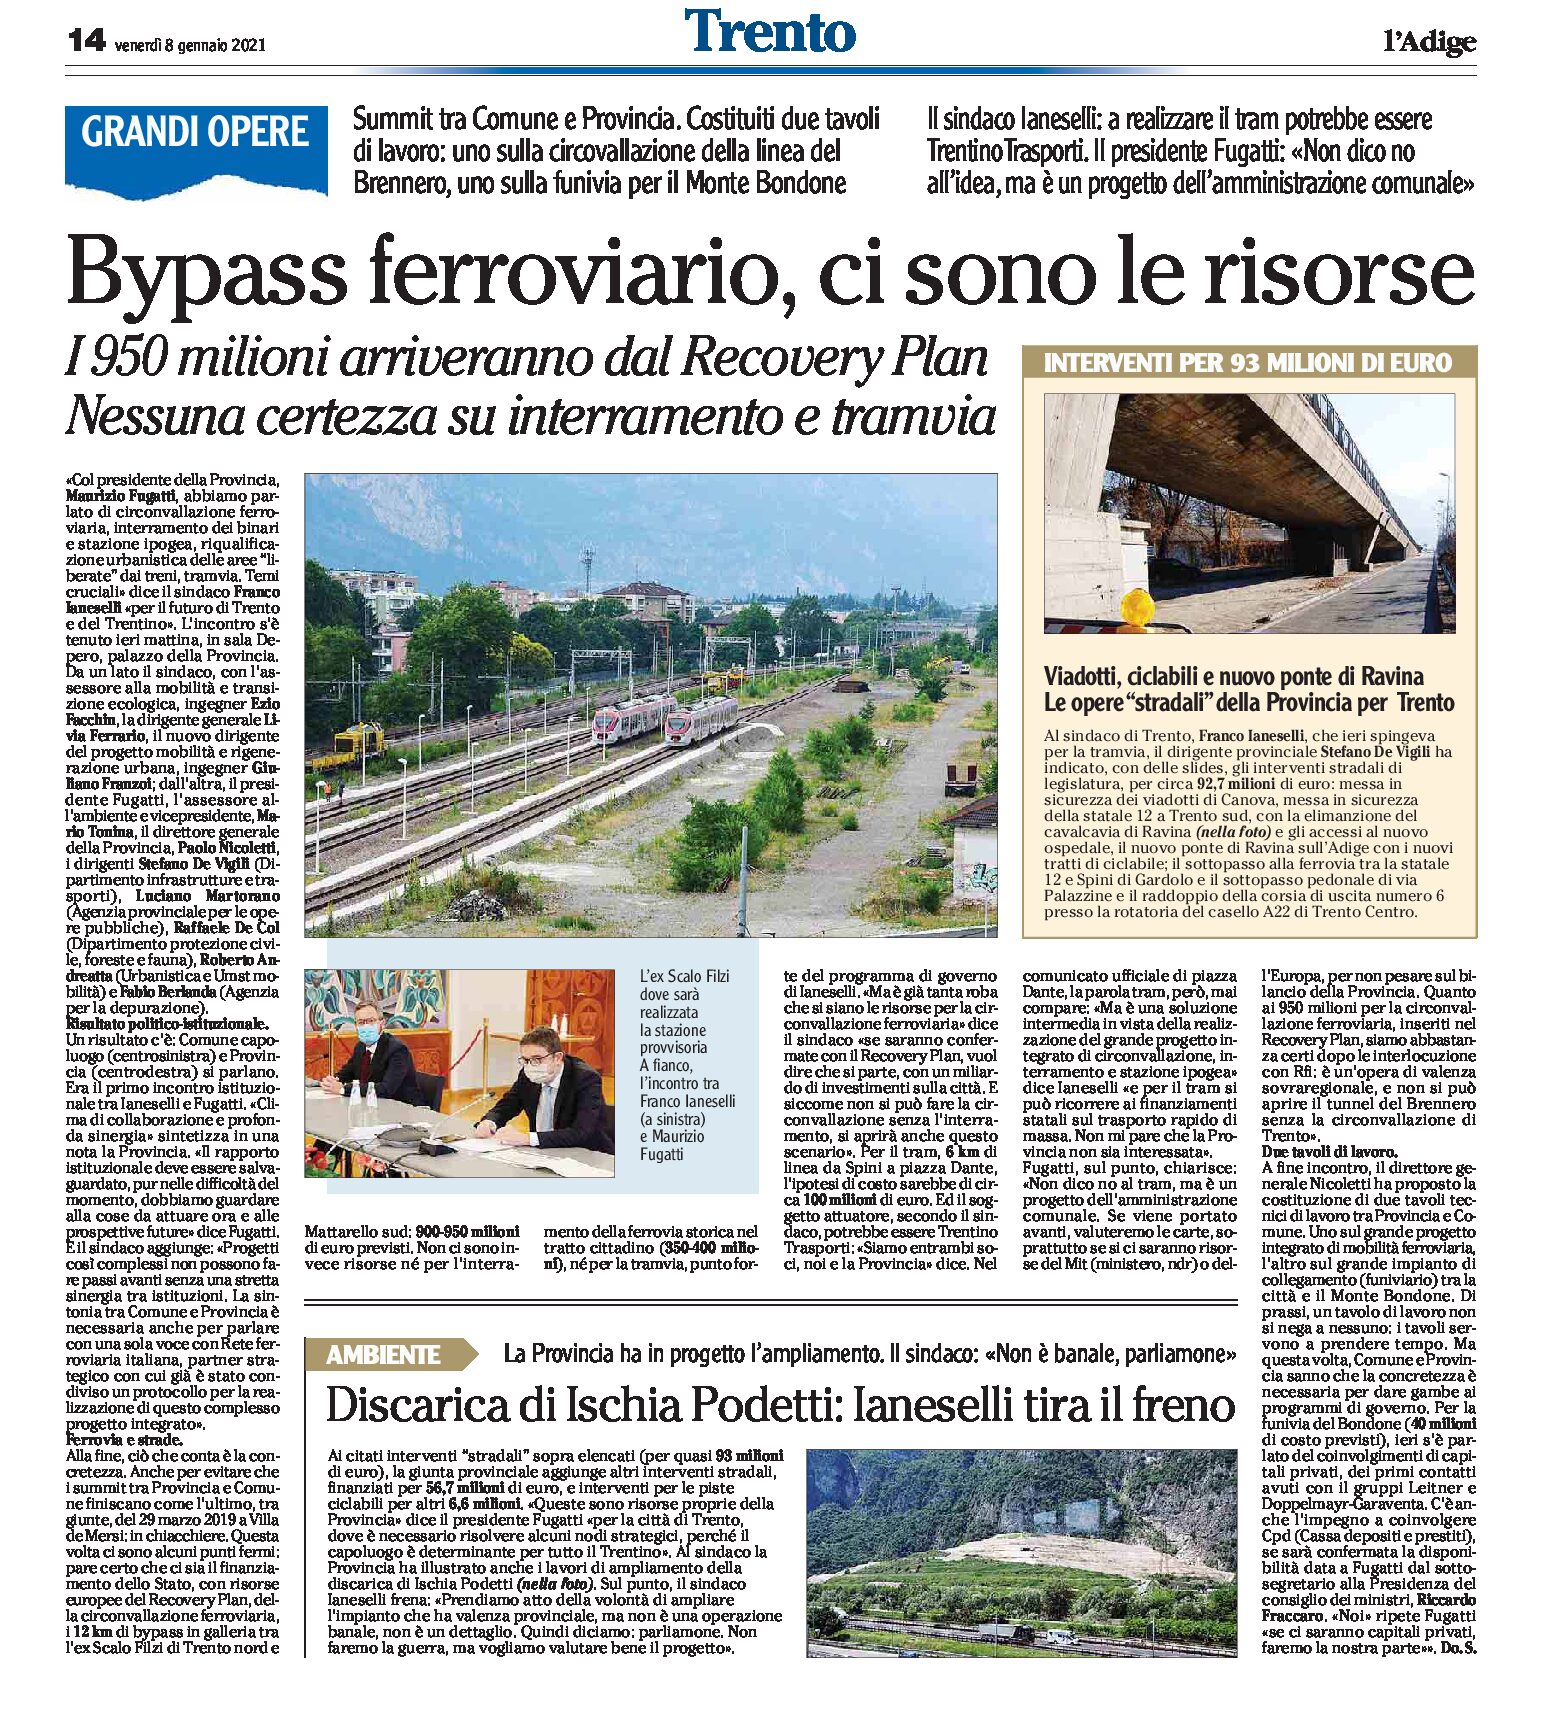 Trento: Bypass ferroviario, ci sono le risorse. Nessuna certezza su interramento e tramvia